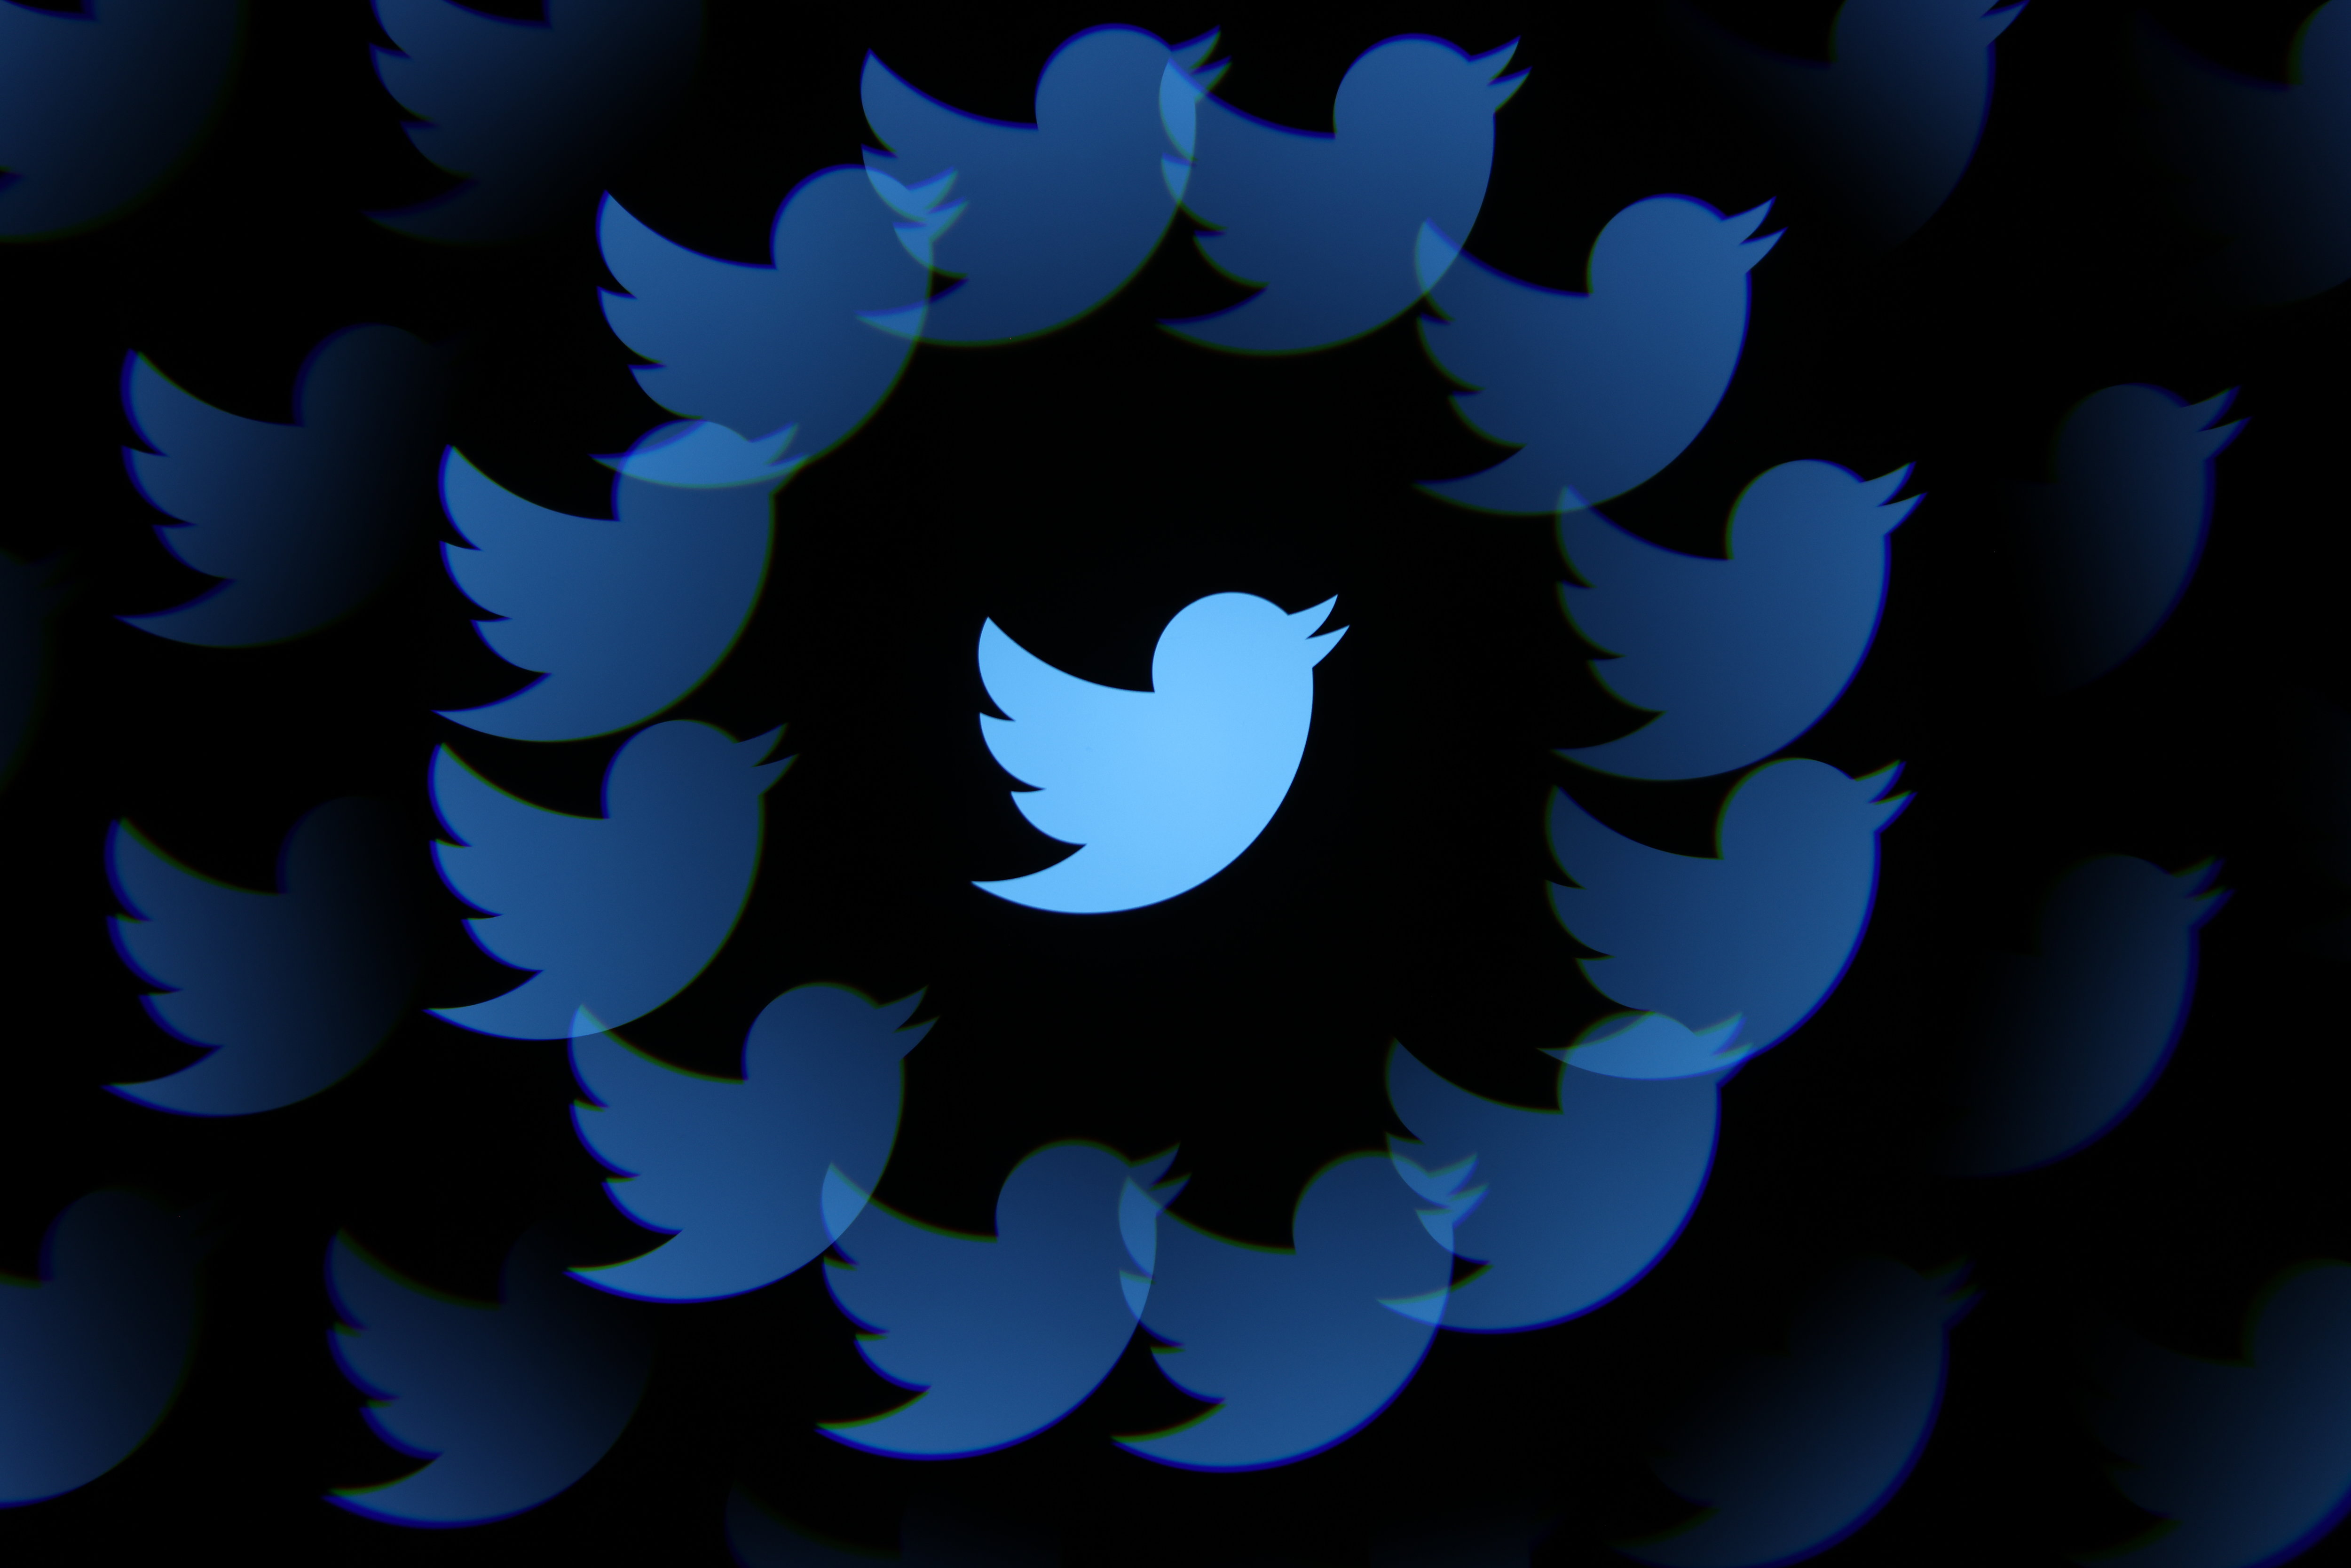 Le réseau social Twitter était en panne pour une partie des utilisateurs français ce mercredi midi. LP/Arnaud Journois